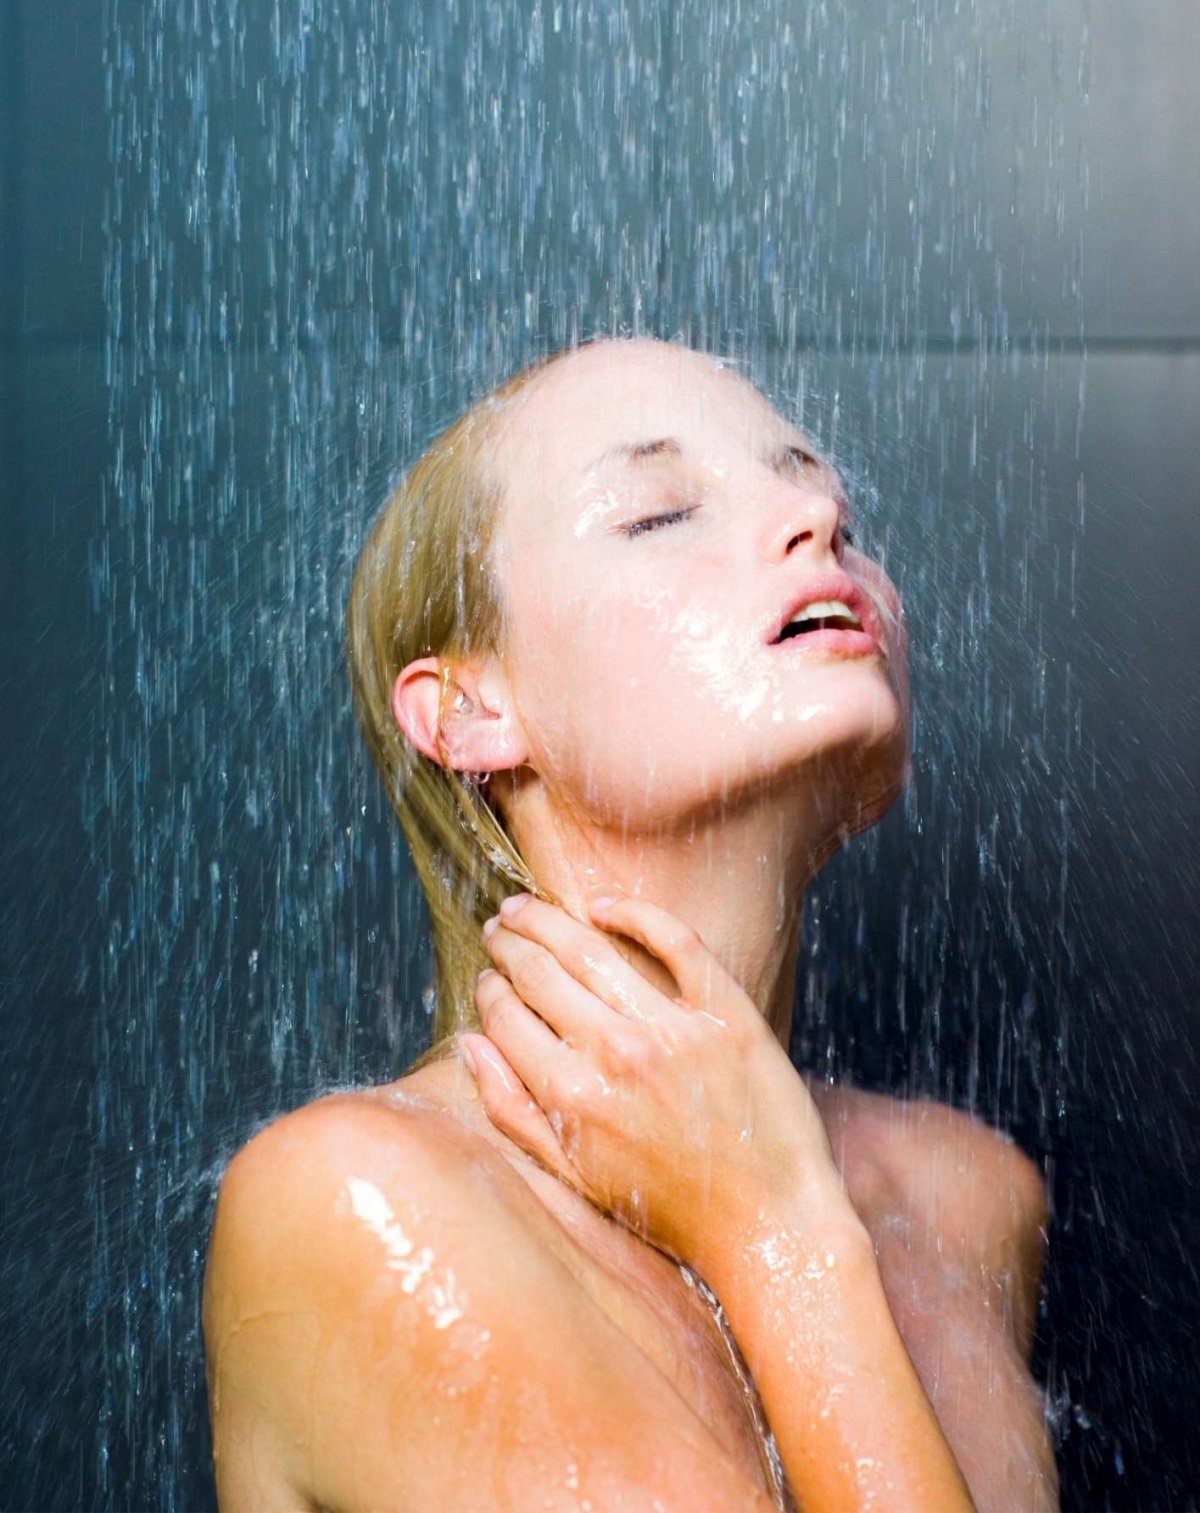 Приятно заглянуть в душ к девушке, когда она моется в нём. 